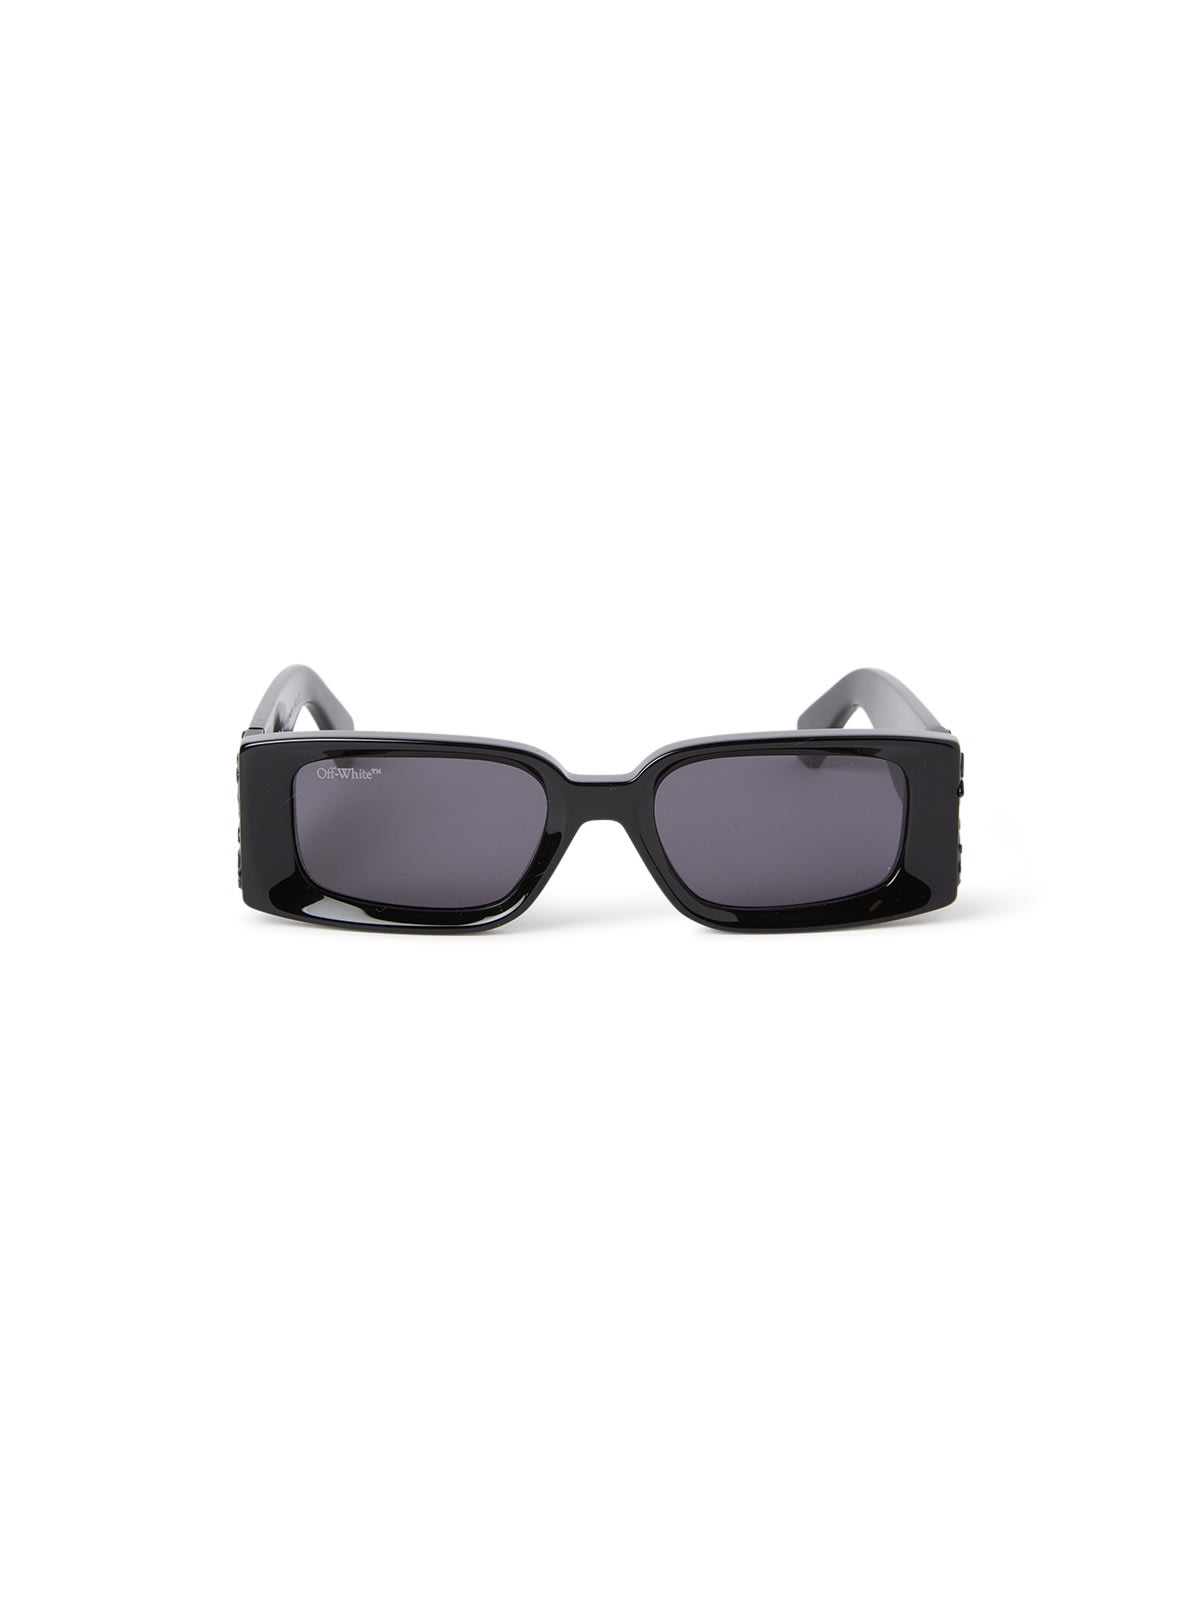 Off-white Oeri098 Roma Sunglasses In Black